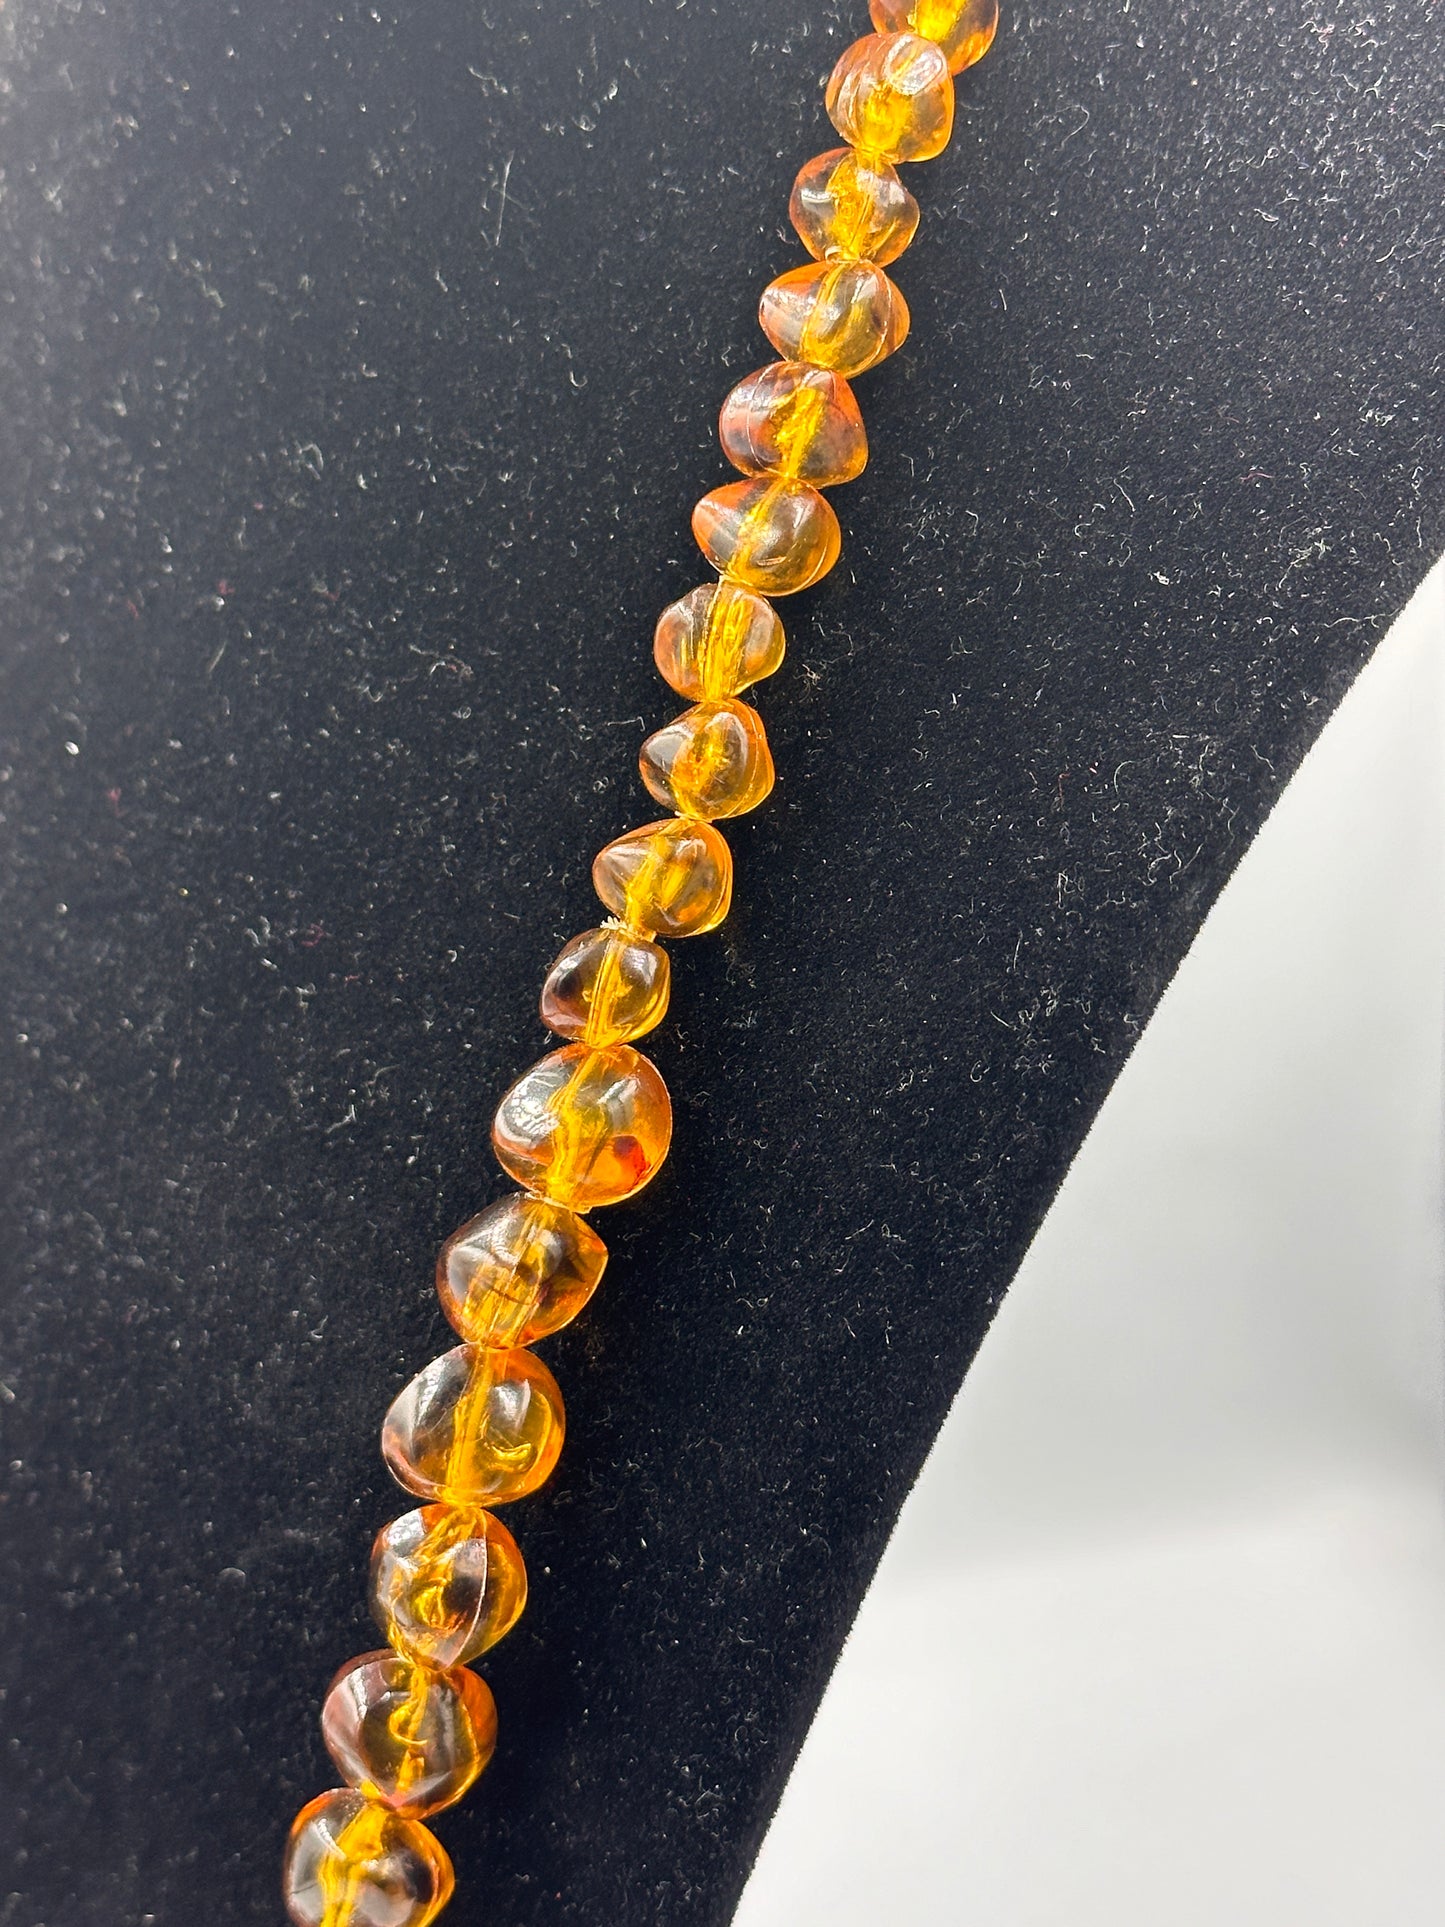 Bärensteinoptik Halskette mit goldfarbenem Verschluss